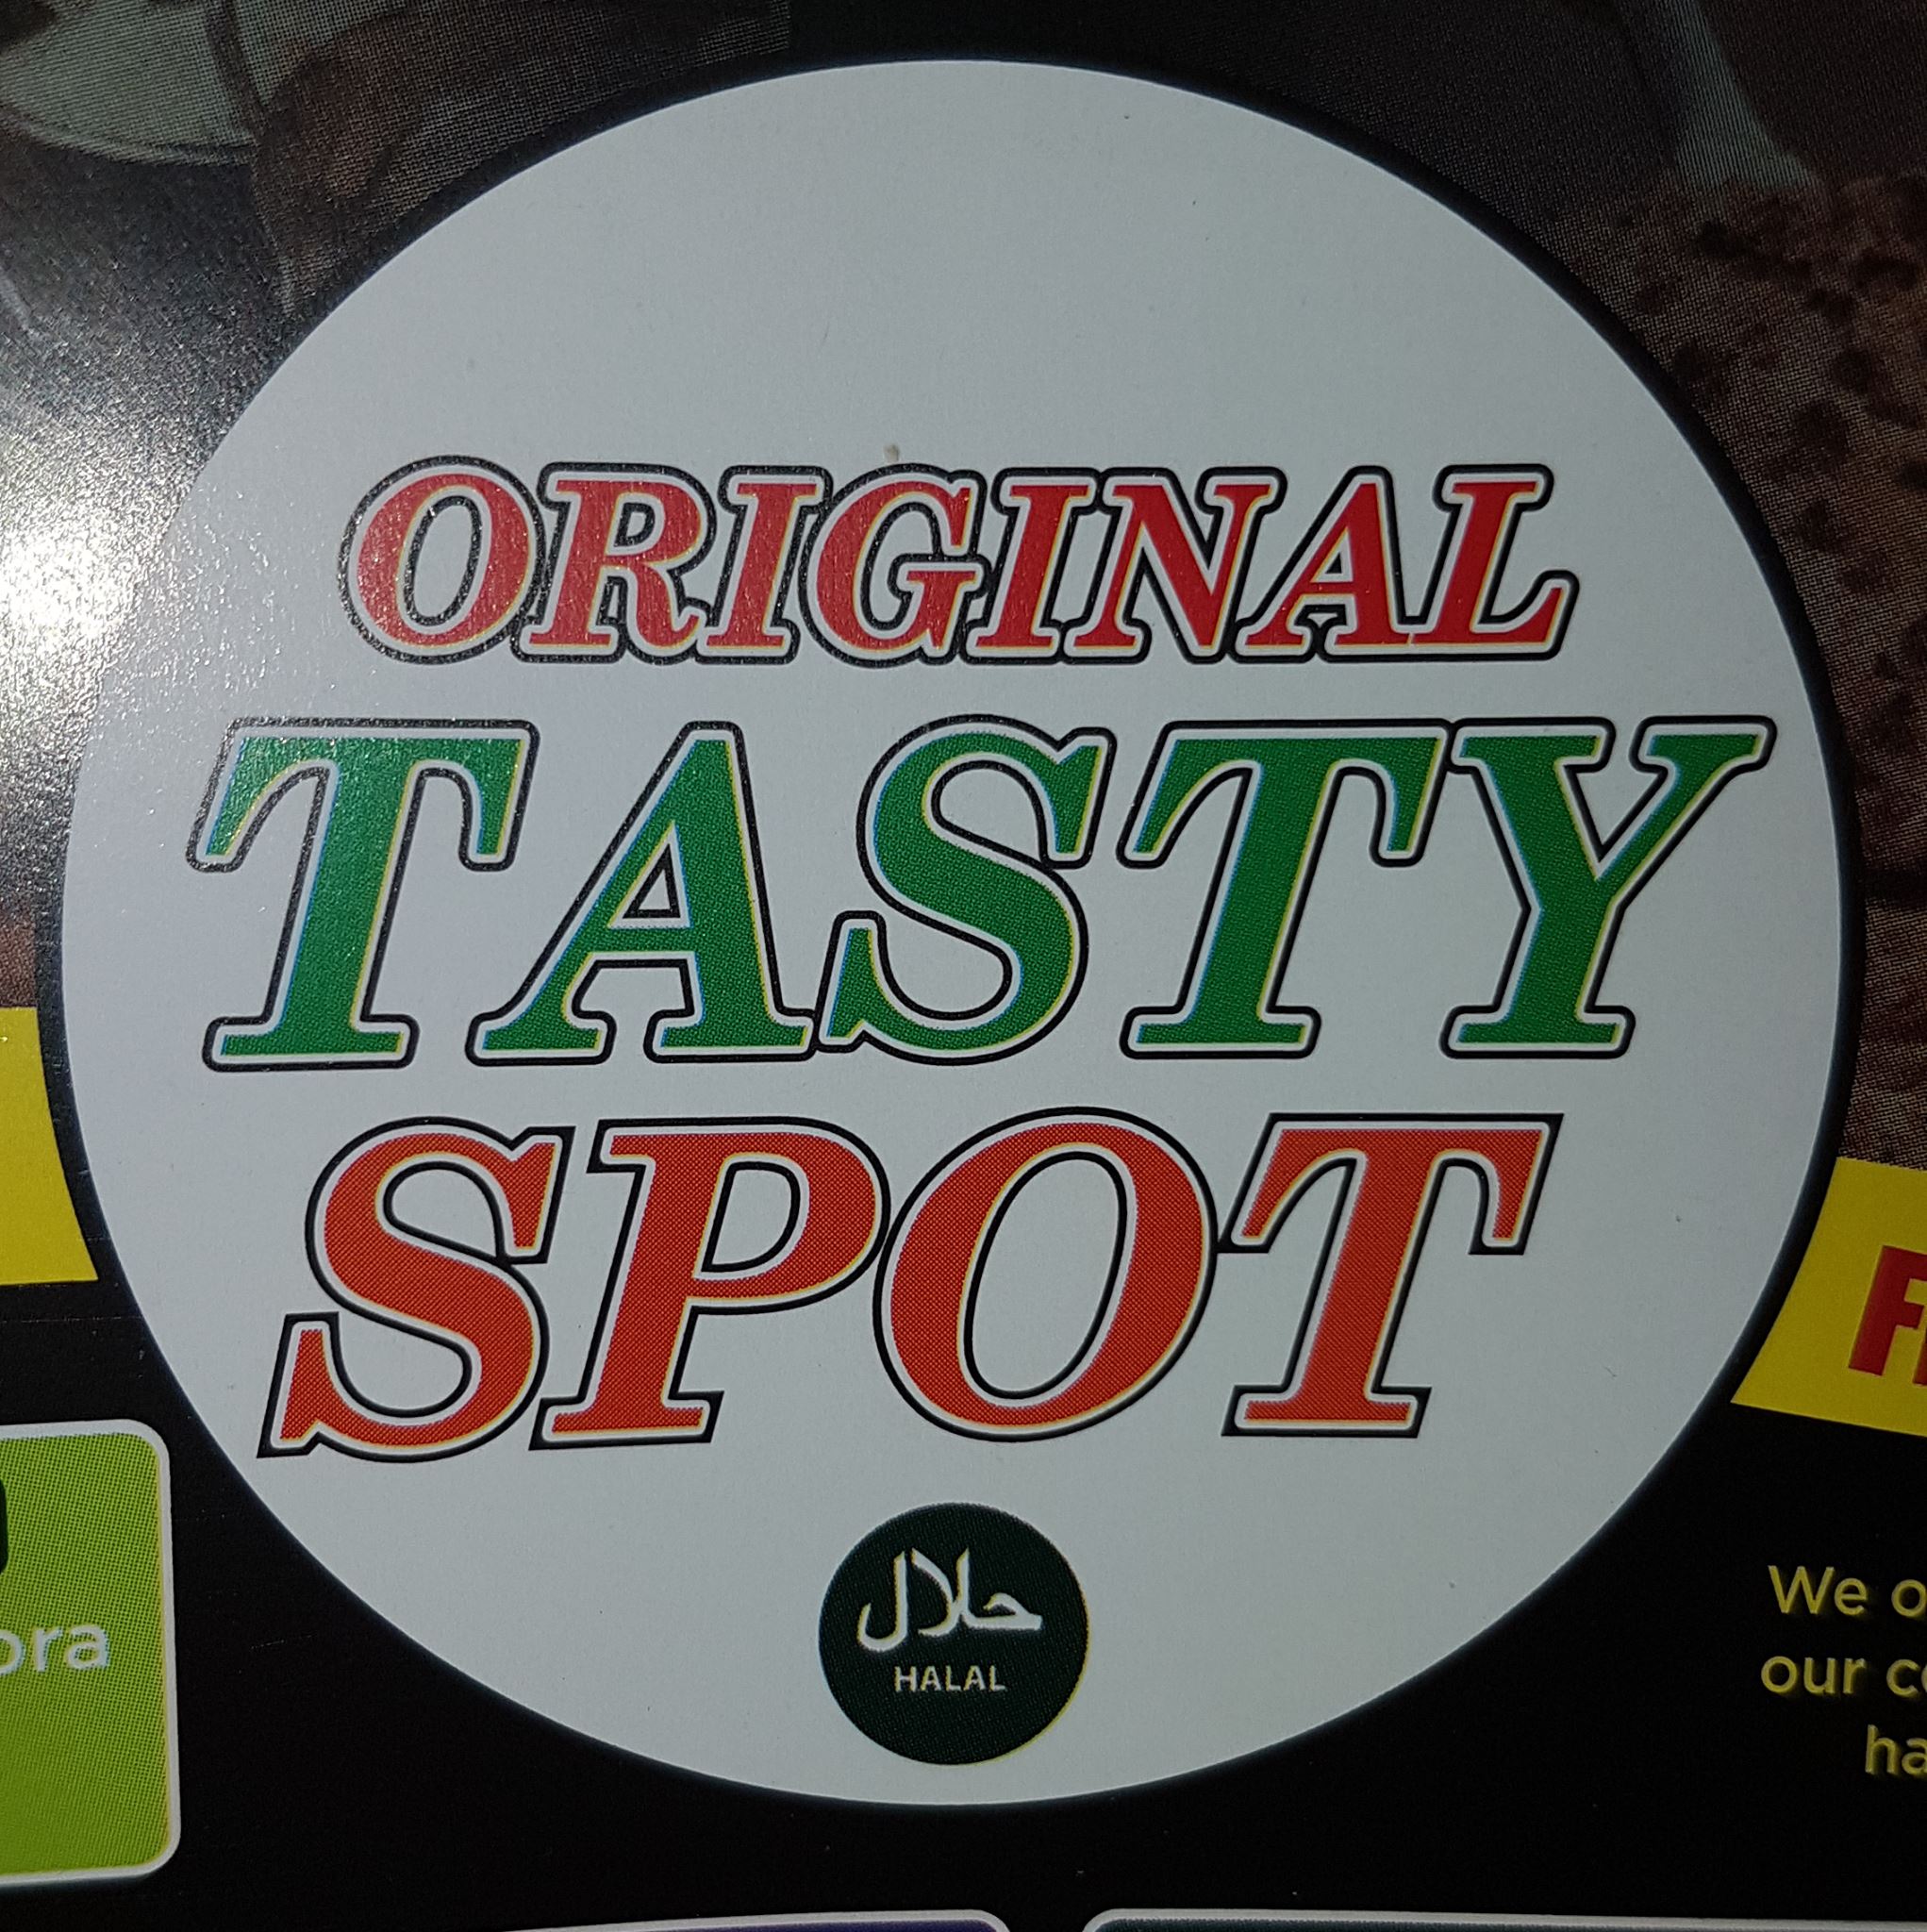 Original Tasty Spot